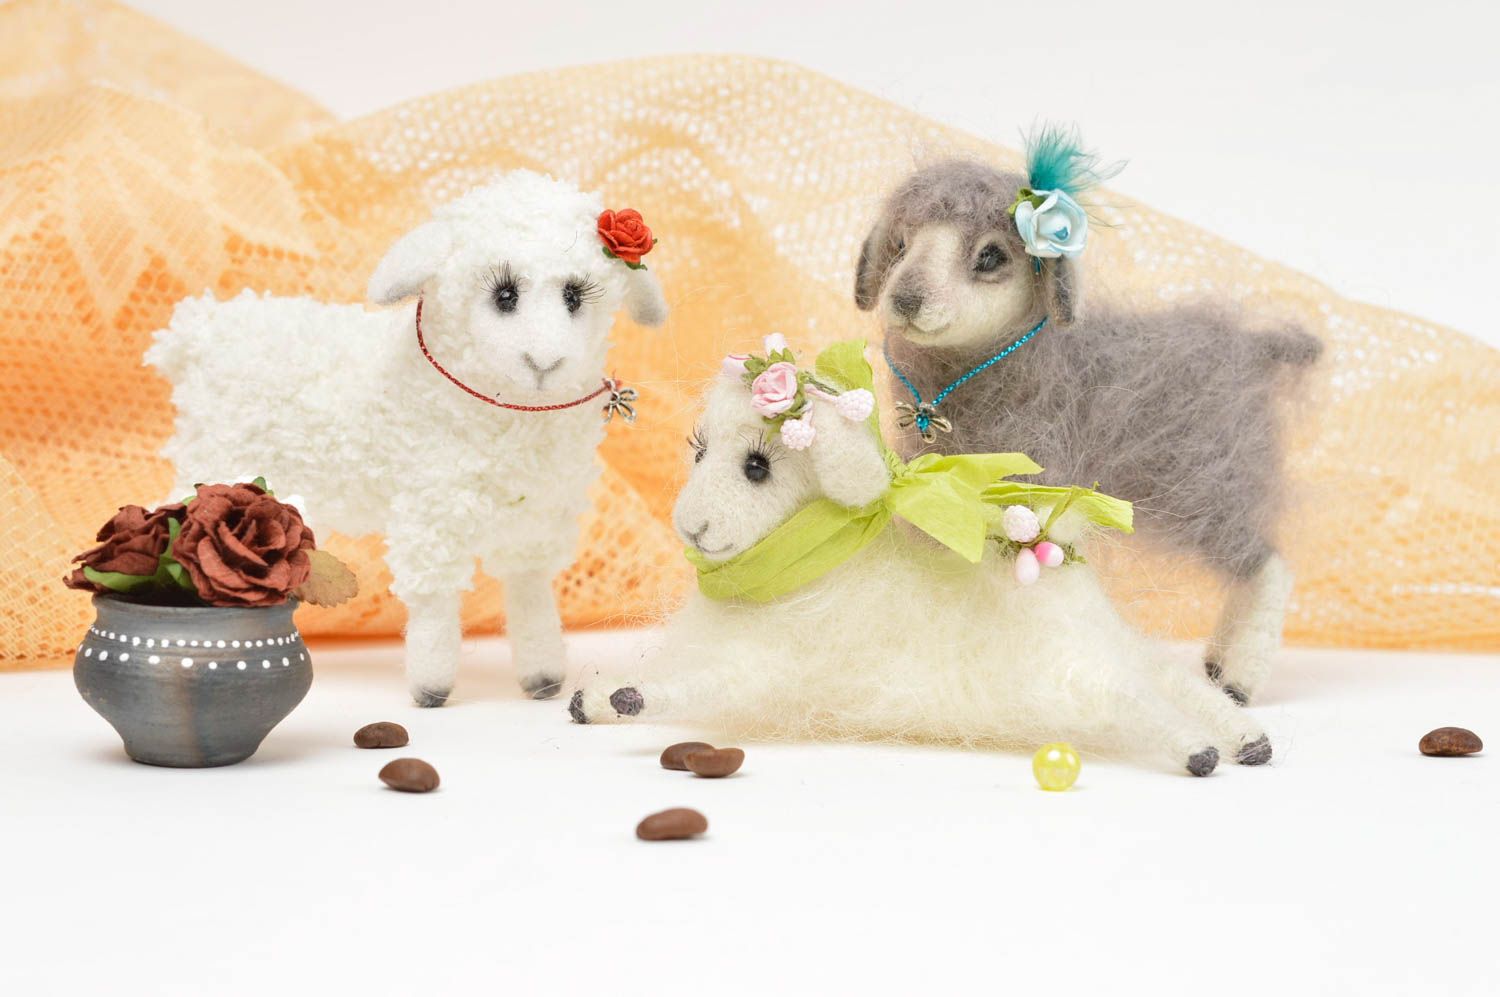 Juguetes artesanales de lana muñecas de peluche regalos originales para niños foto 1